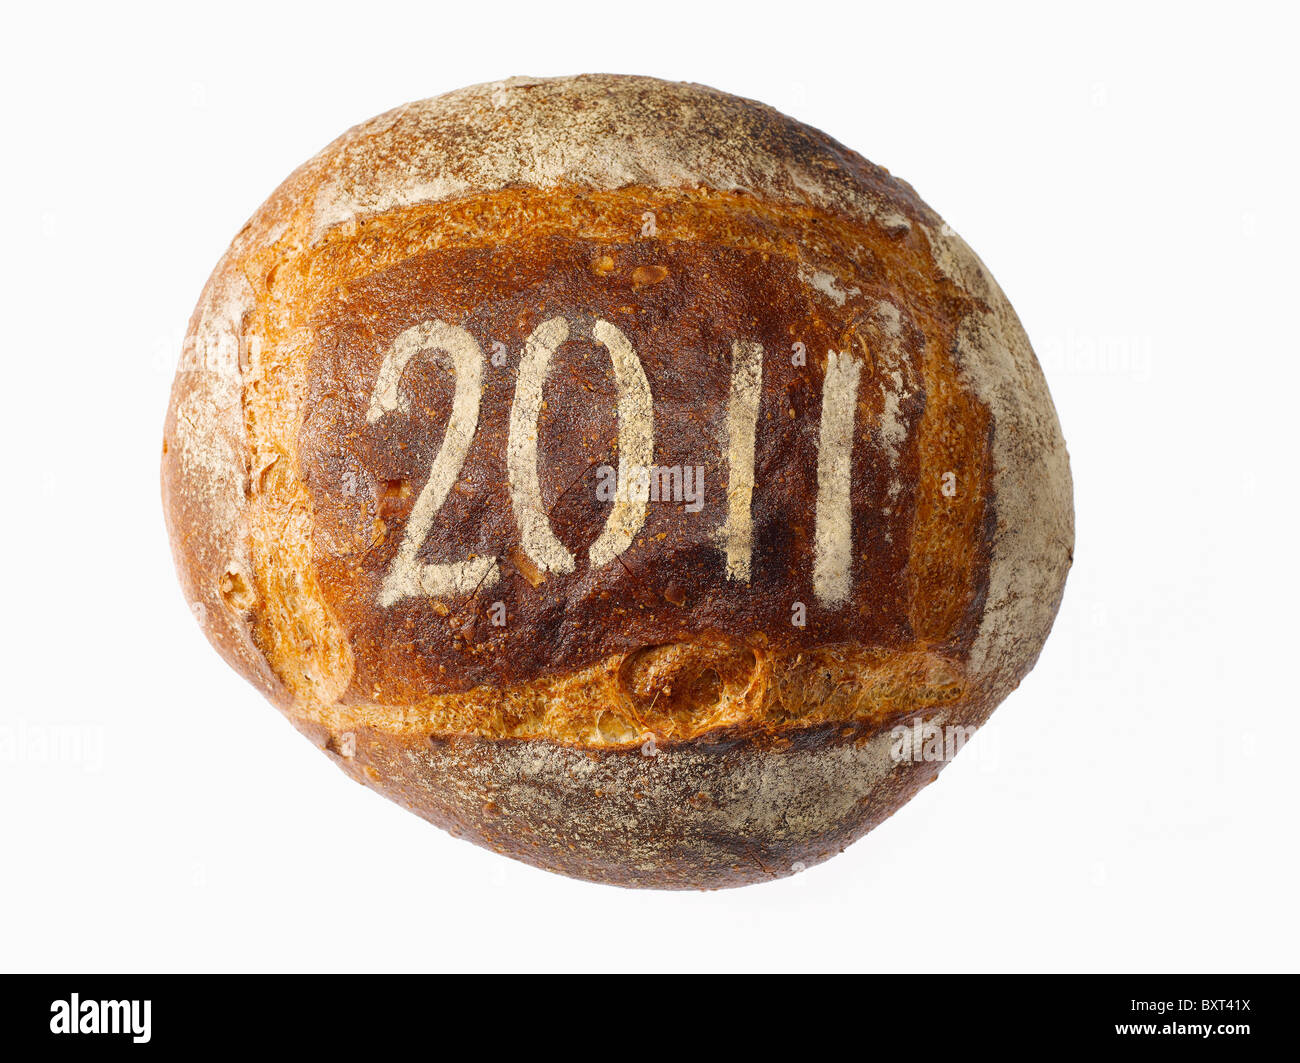 Pan redondo de pan espolvoreado con el año 2011 Foto de stock